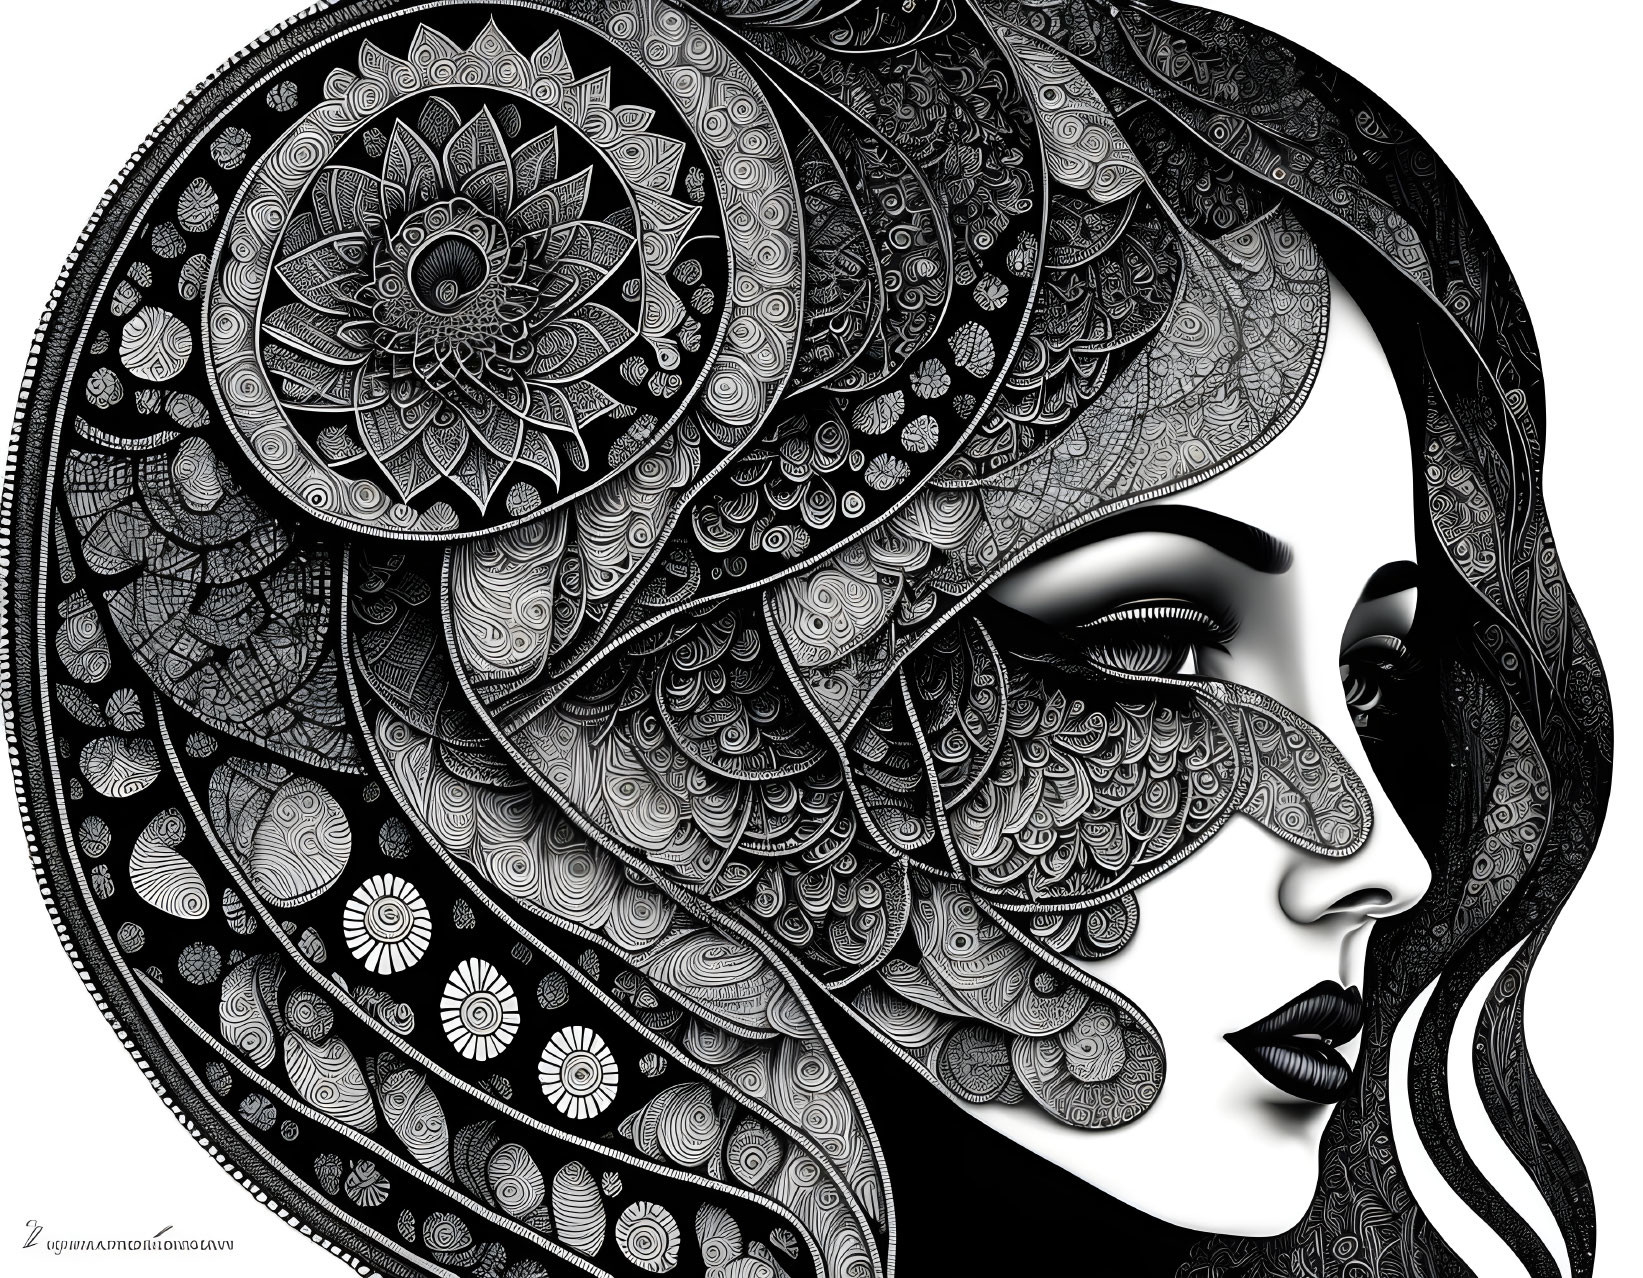 Monochrome woman profile illustration with intricate mandala-like patterns